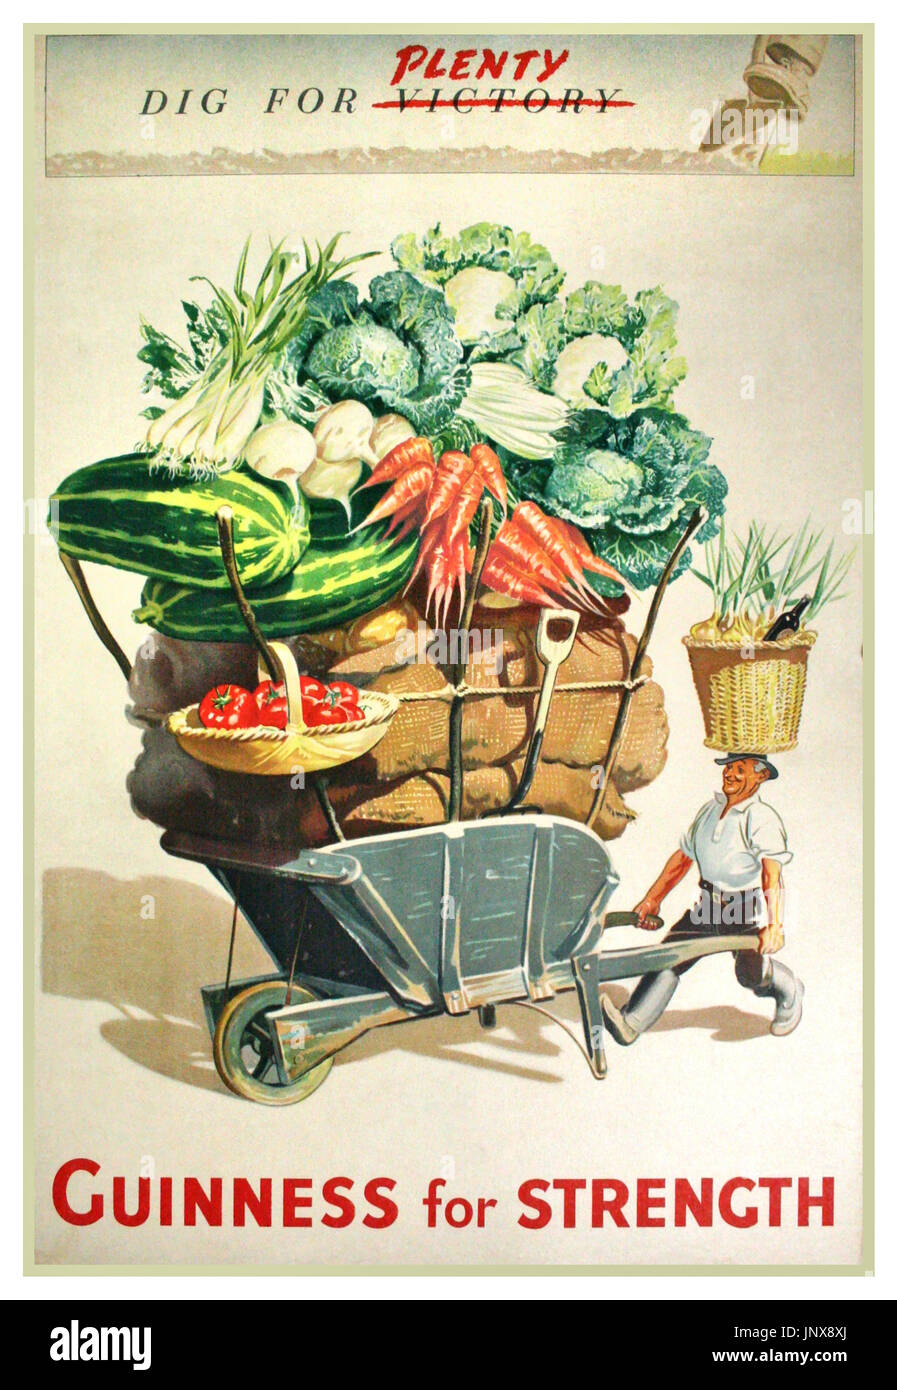 WW2 British Propaganda Plakat 1940 Dig für (Sieg) Viel Förderung Guinness für Stärke zu viel und Gemüse produzieren für Sieg dig Stockfoto